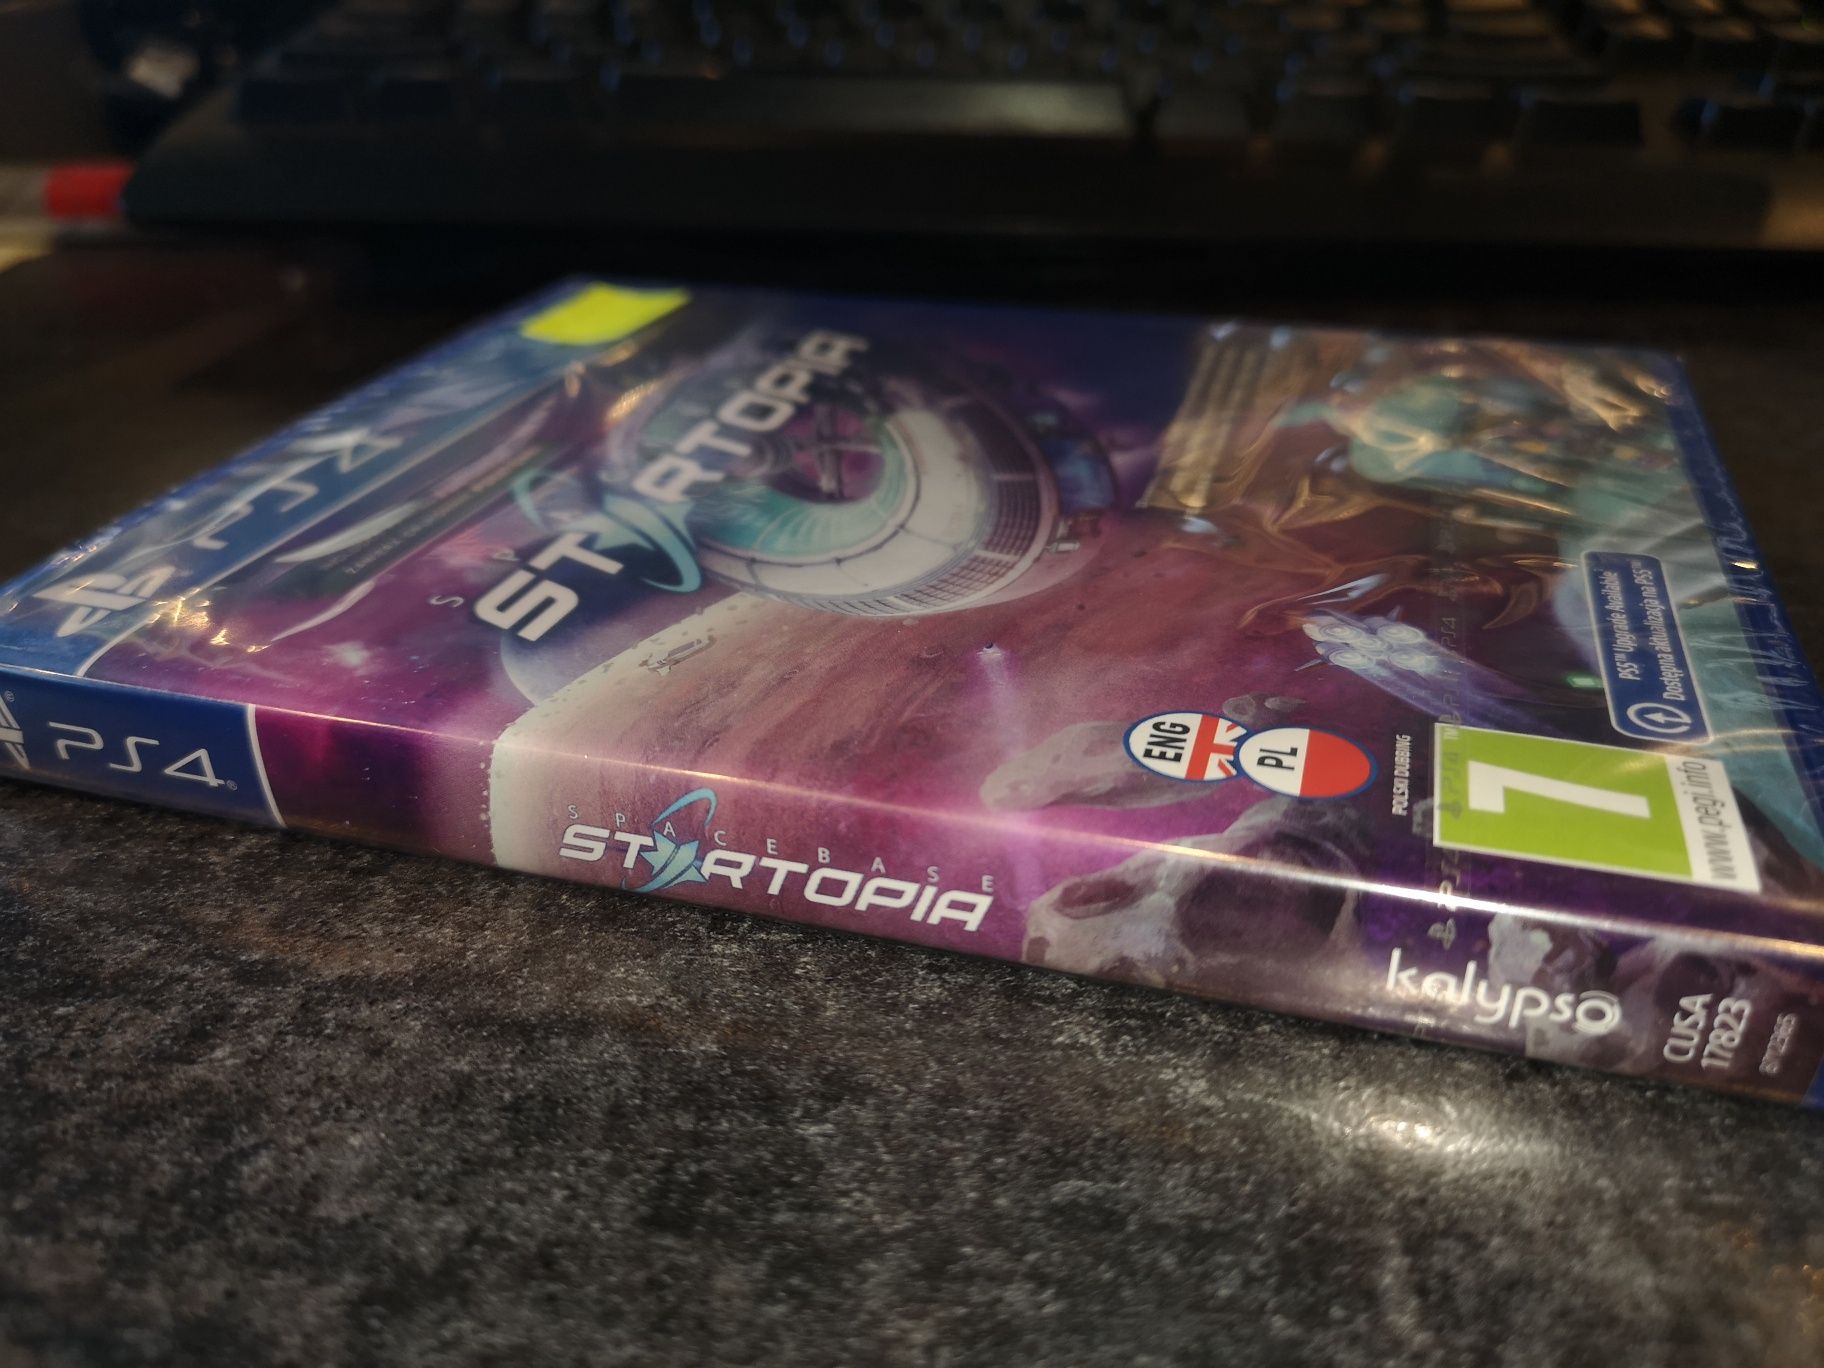 SpaceBase Startopia PS4 gra PL (strategia ekonomiczna) (Nowa) sklep